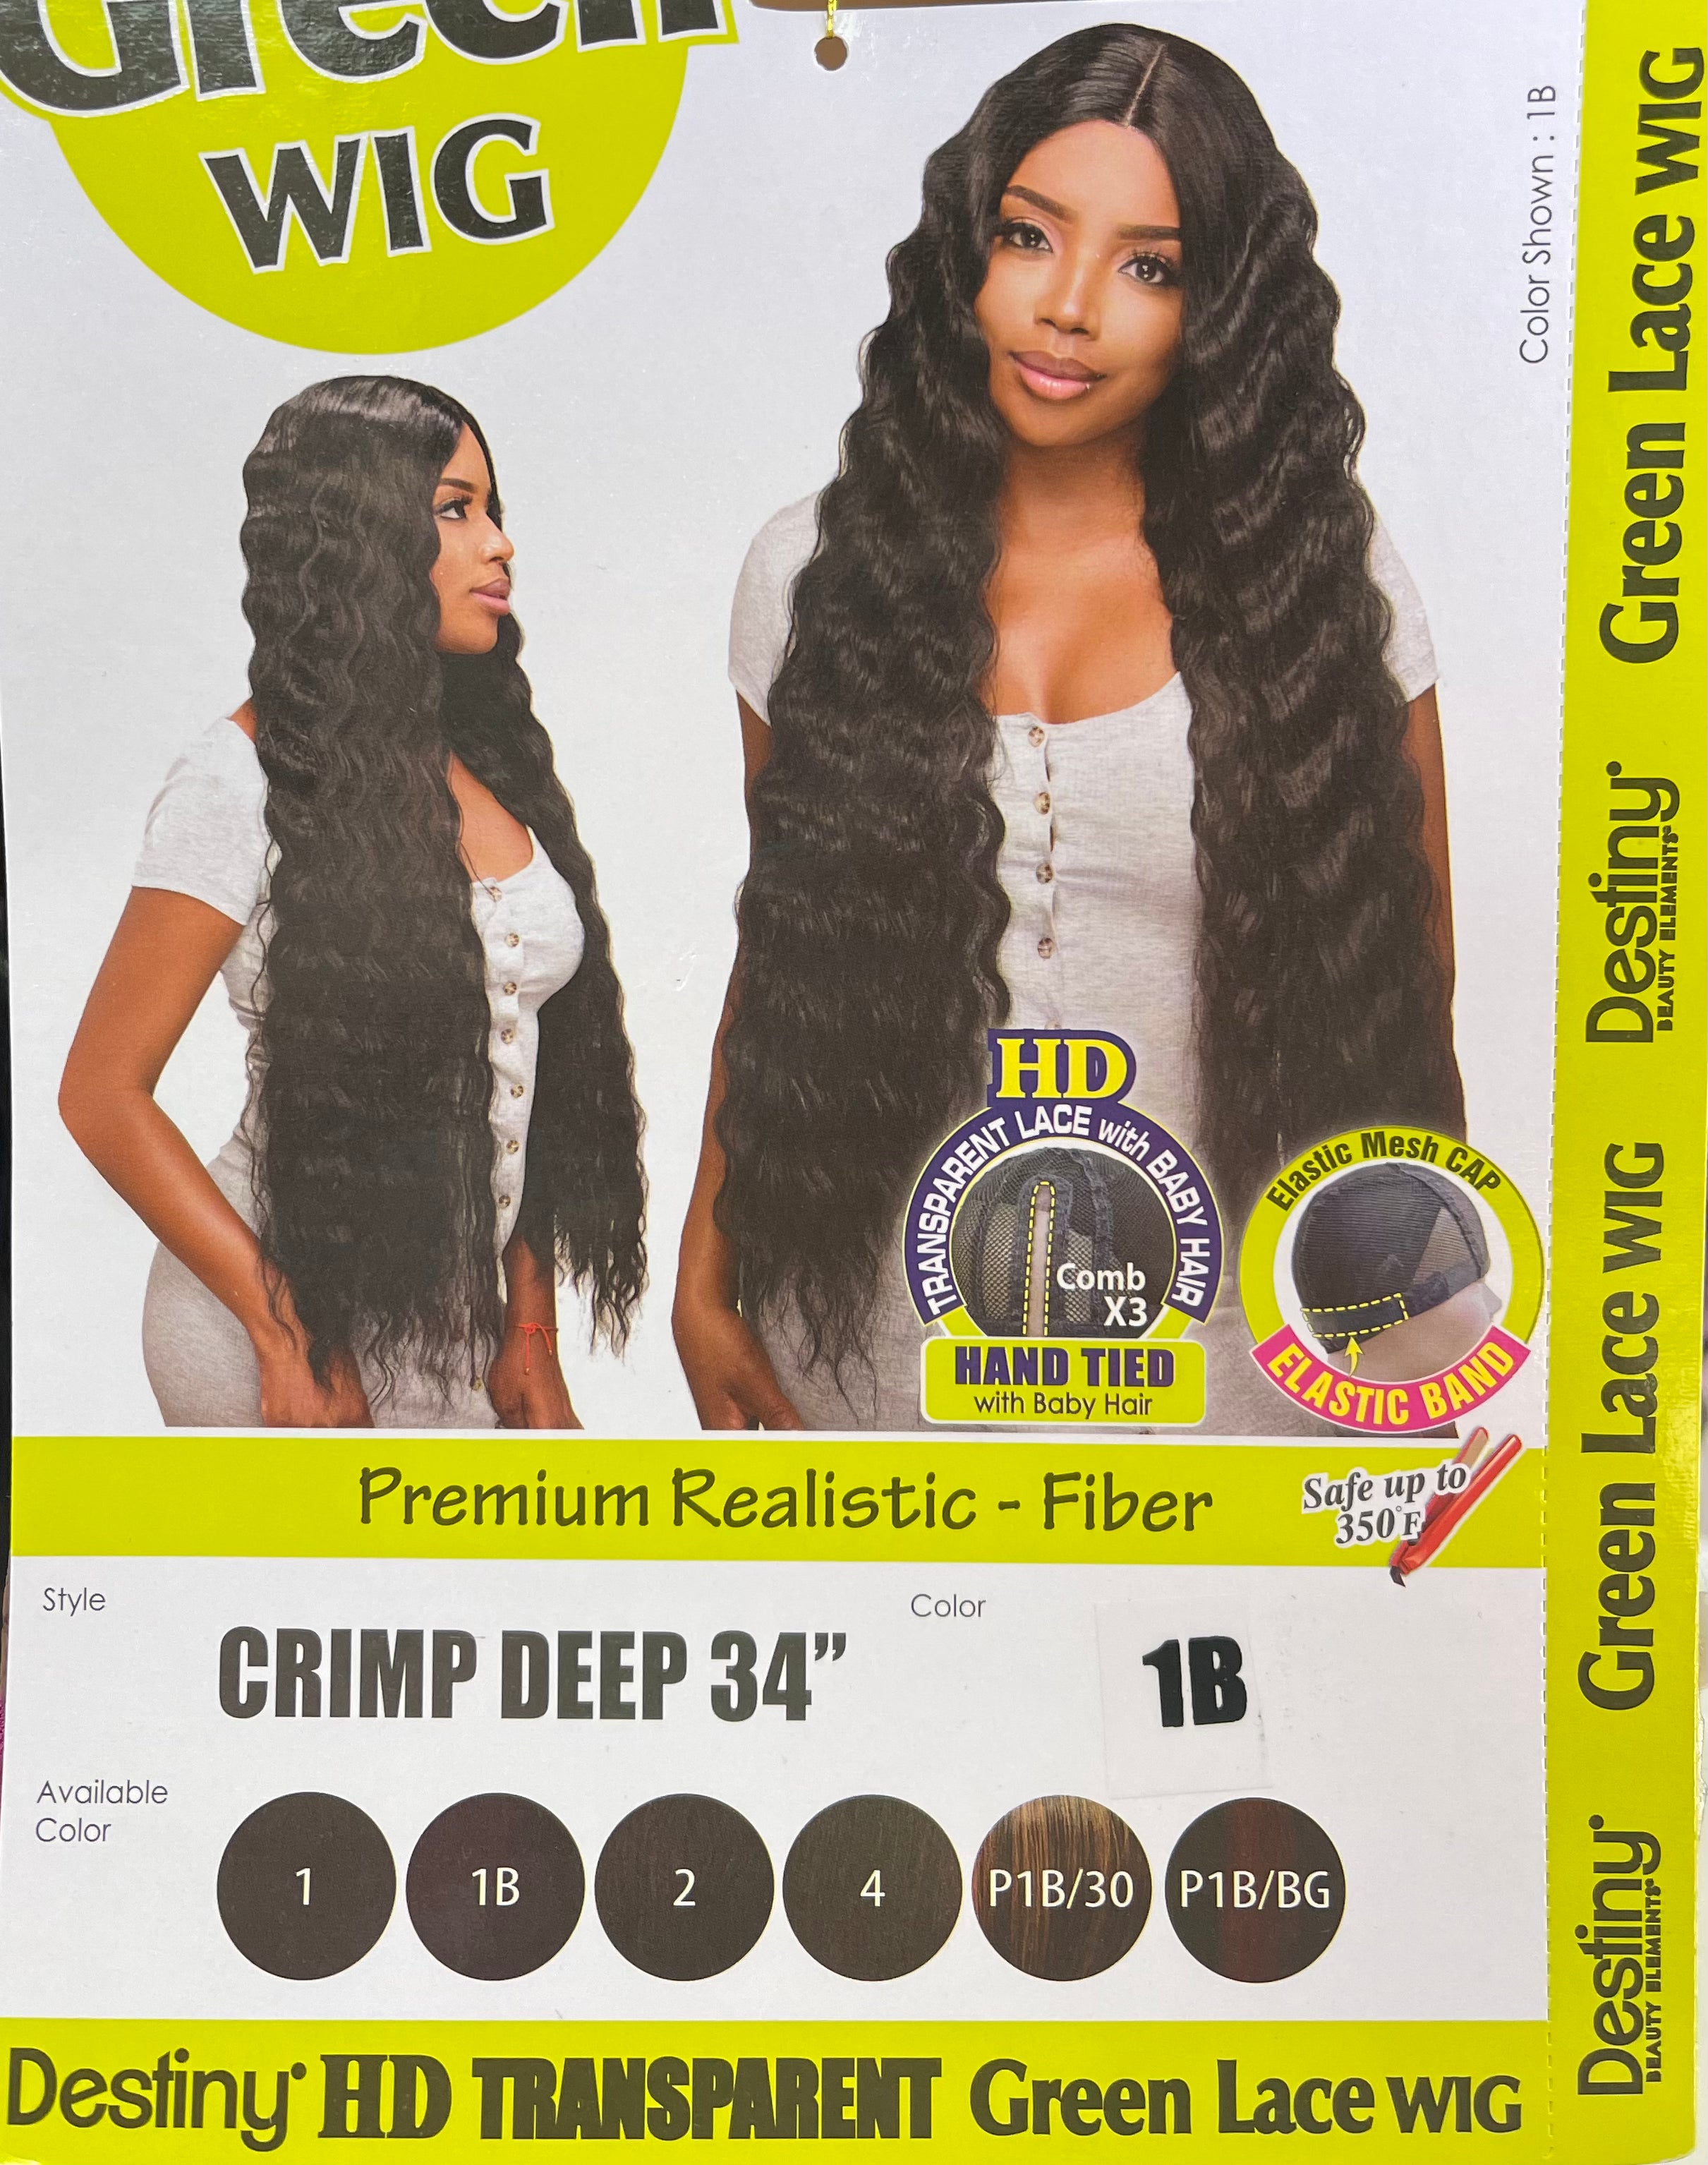 Destiny Green Lace Wig - Crimp Deep 34’